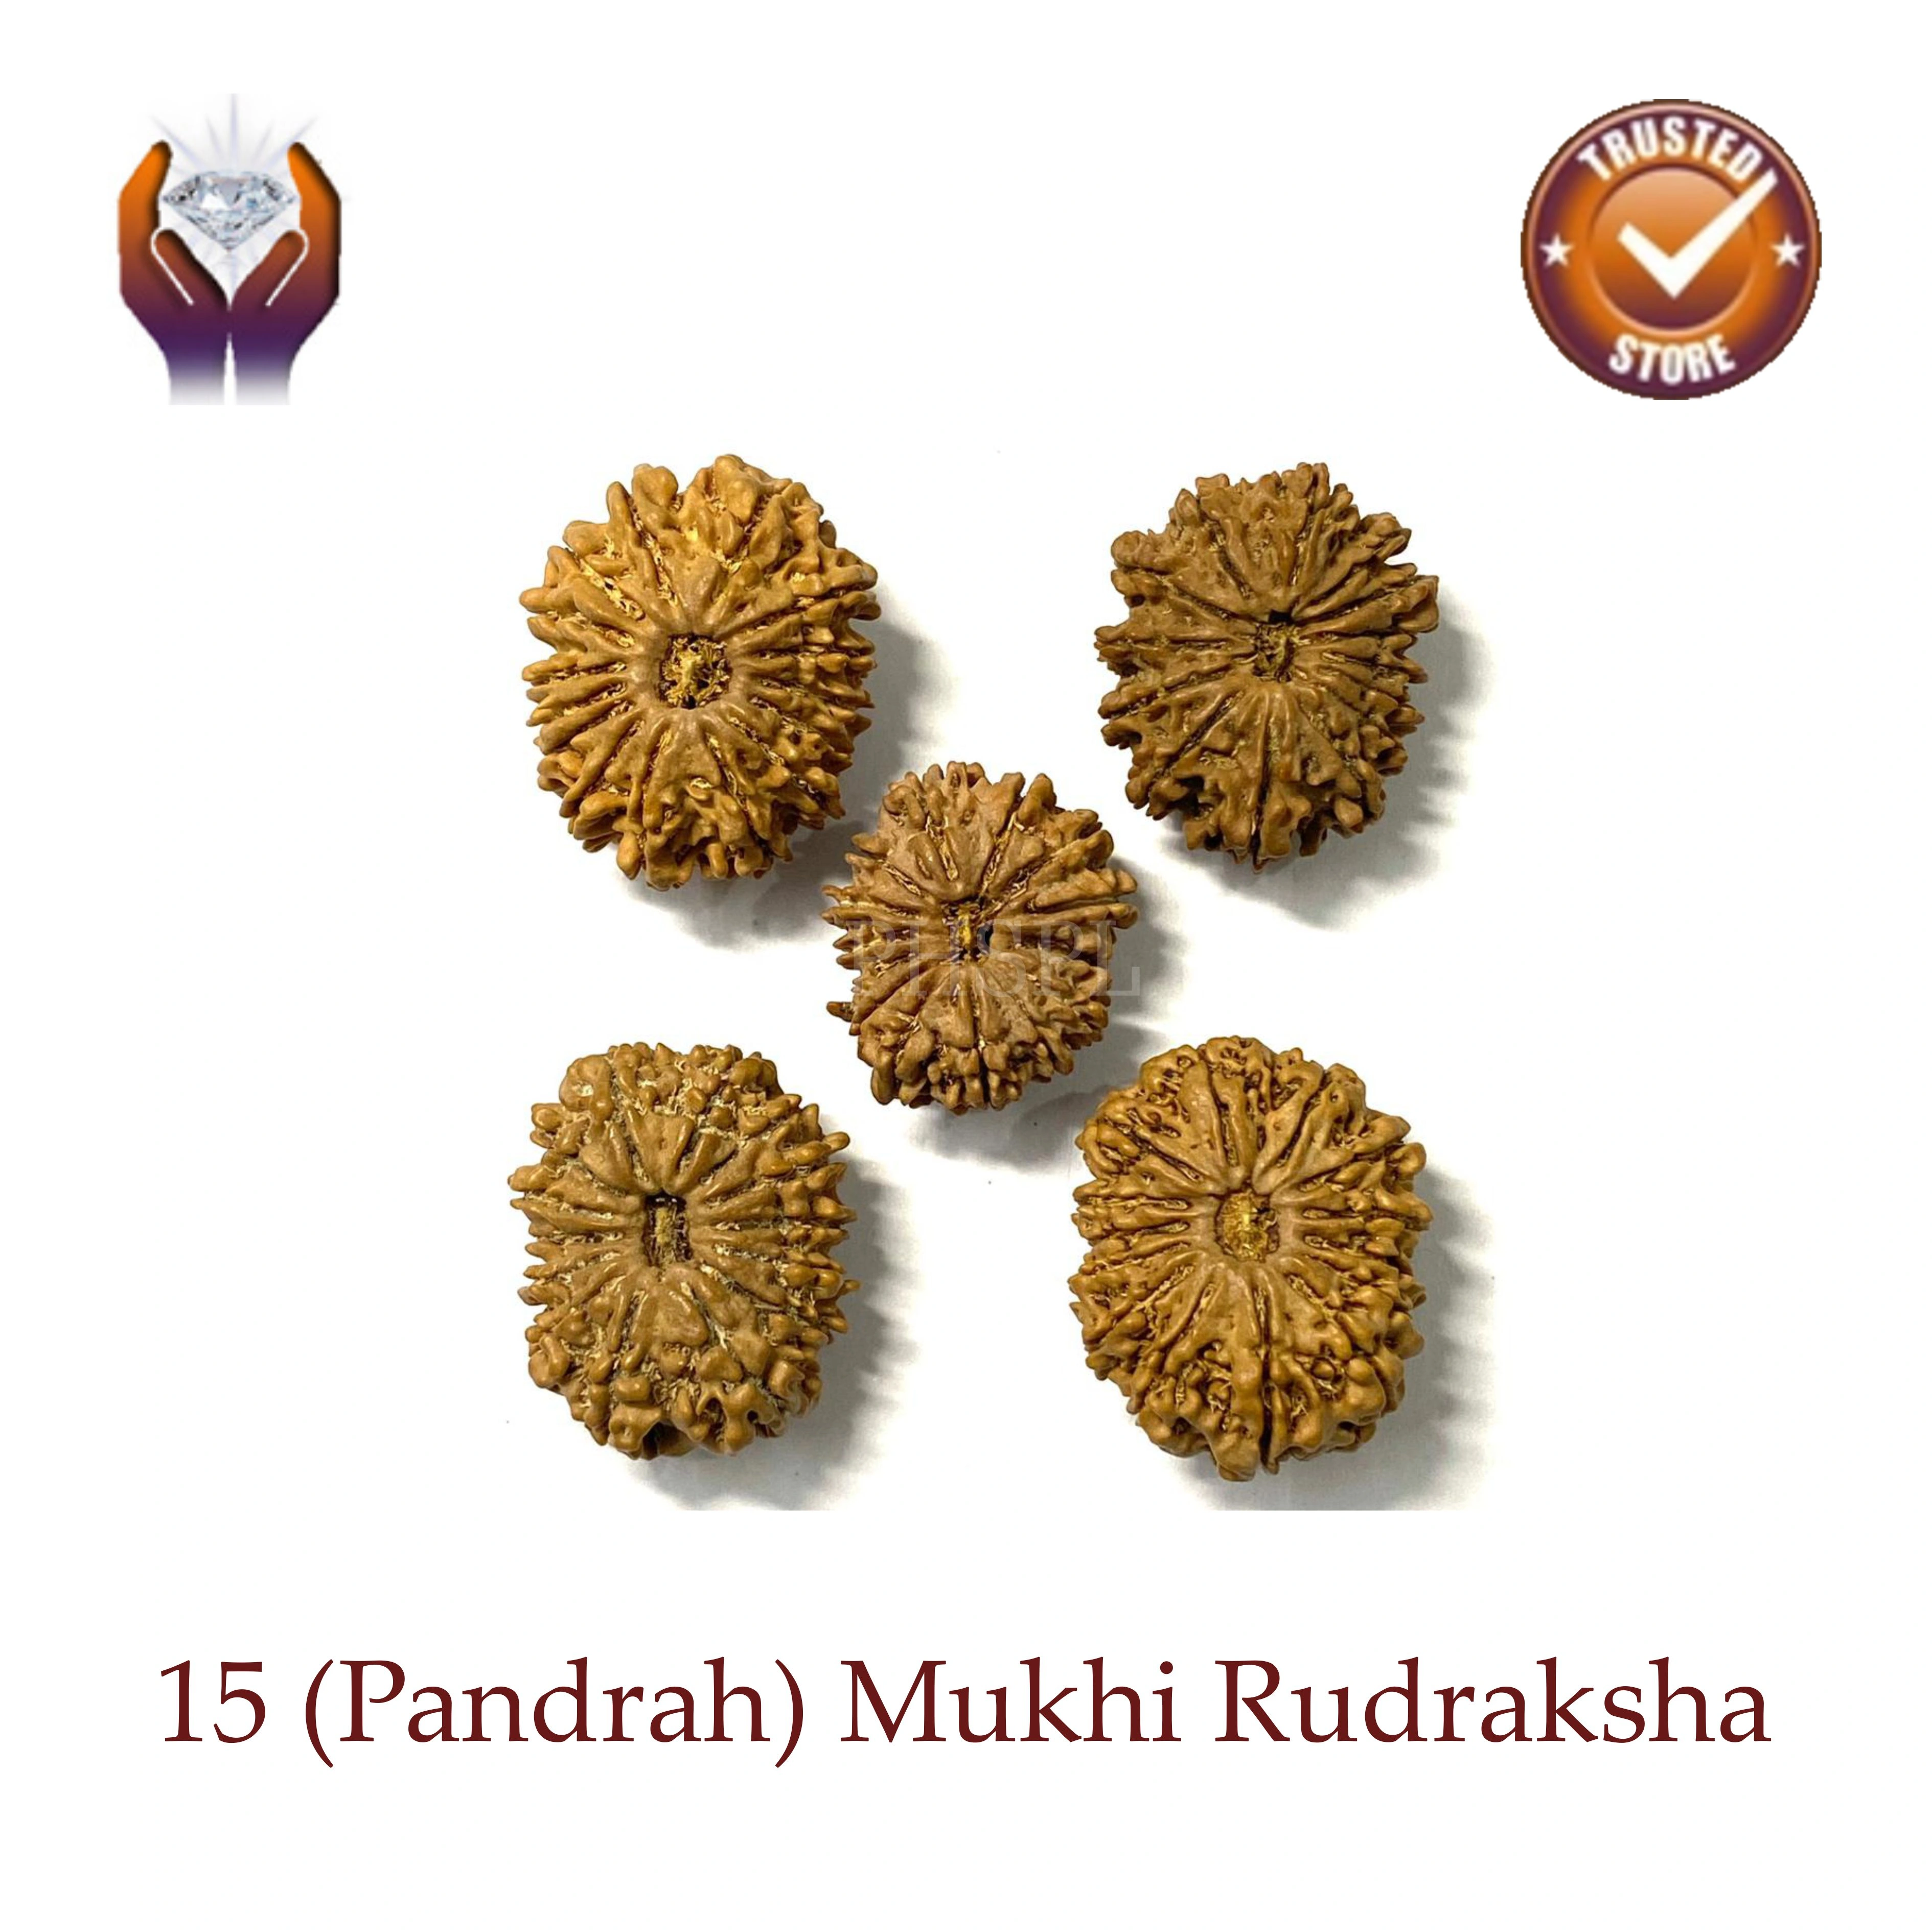 Fifteen Mukhi Rudraksha